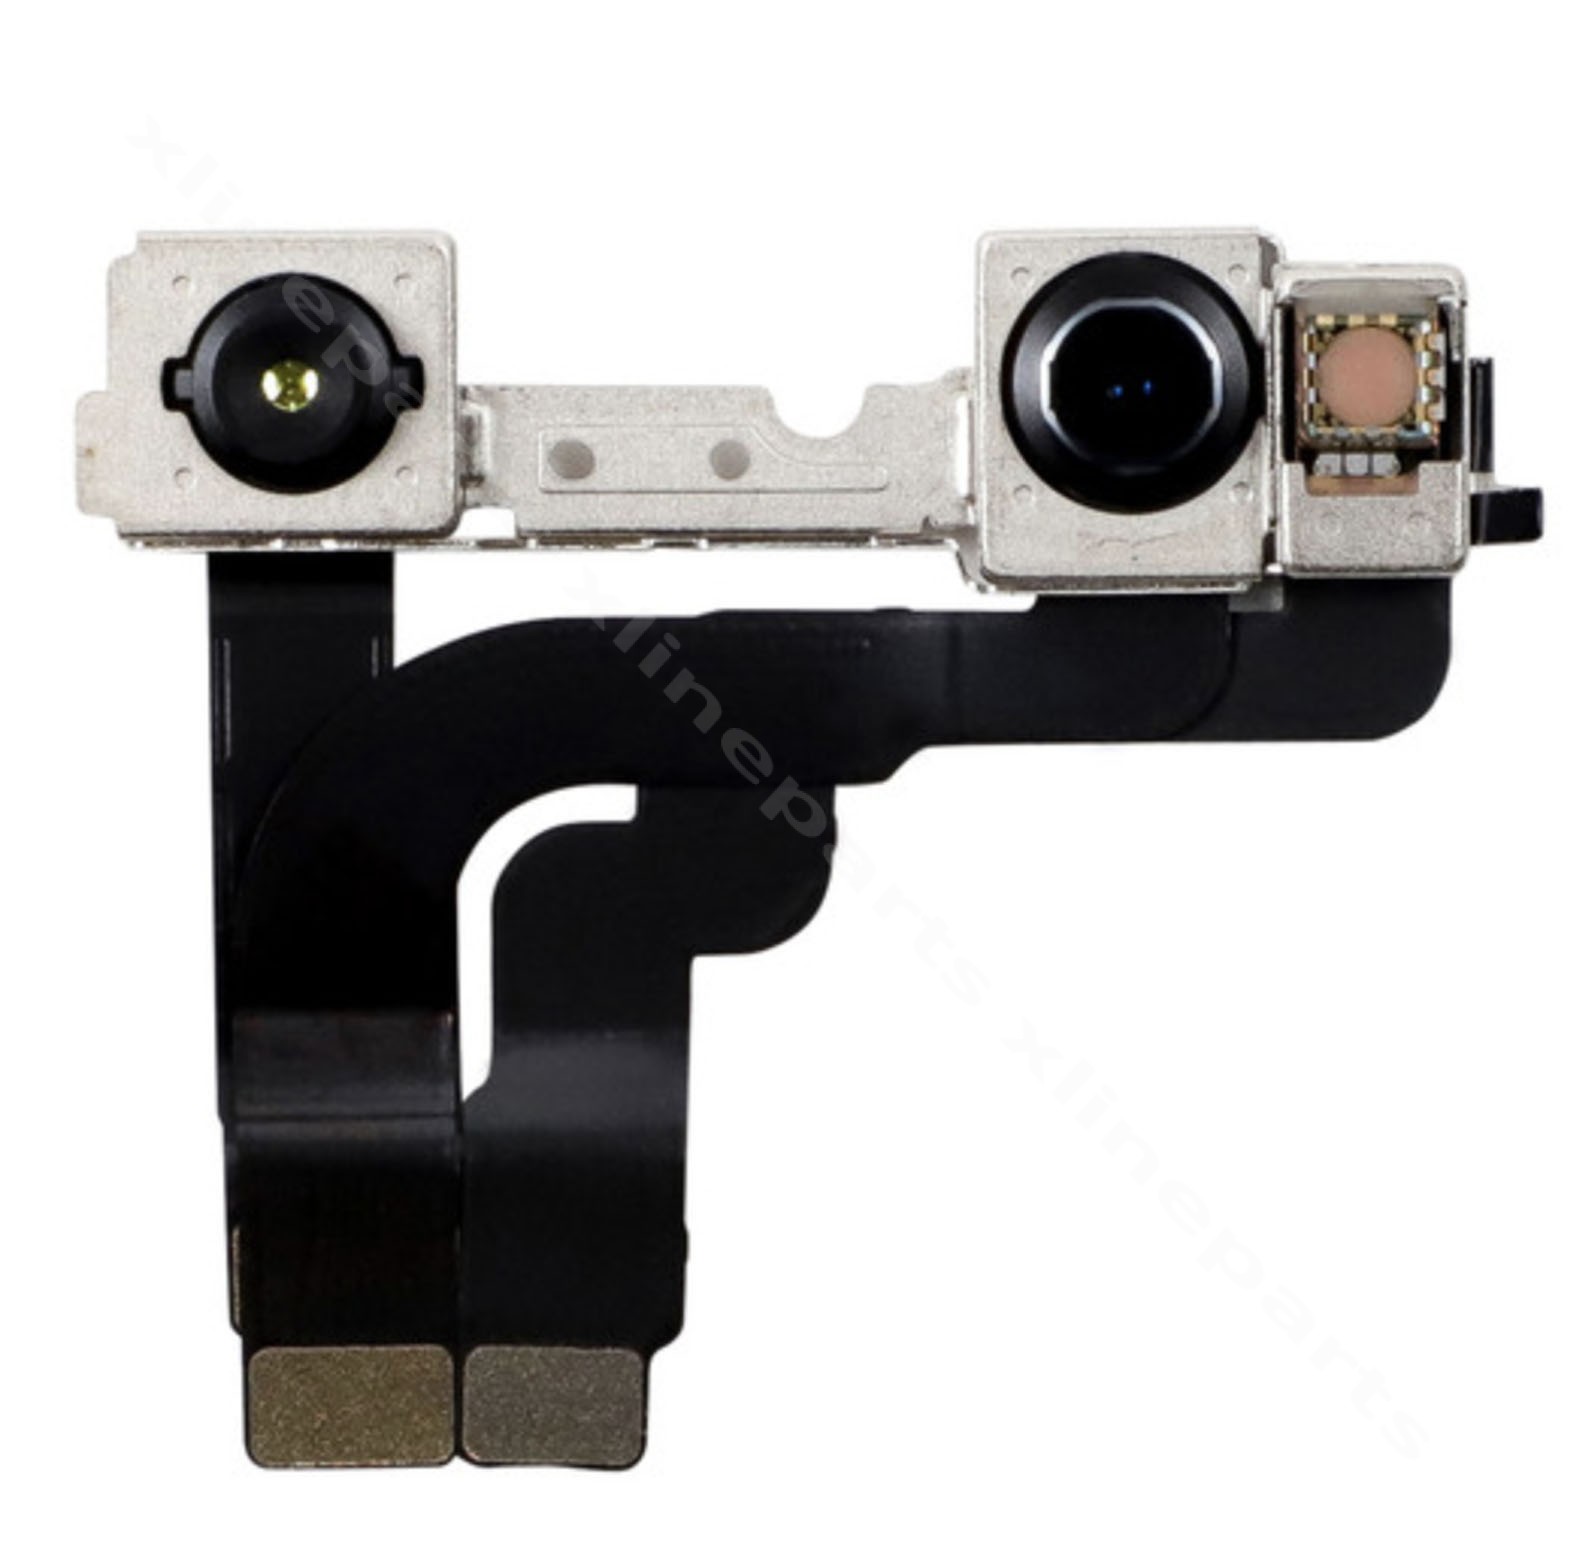 Ευέλικτη μπροστινή κάμερα αισθητήρας εγγύτητας Apple iPhone 12 Pro Max